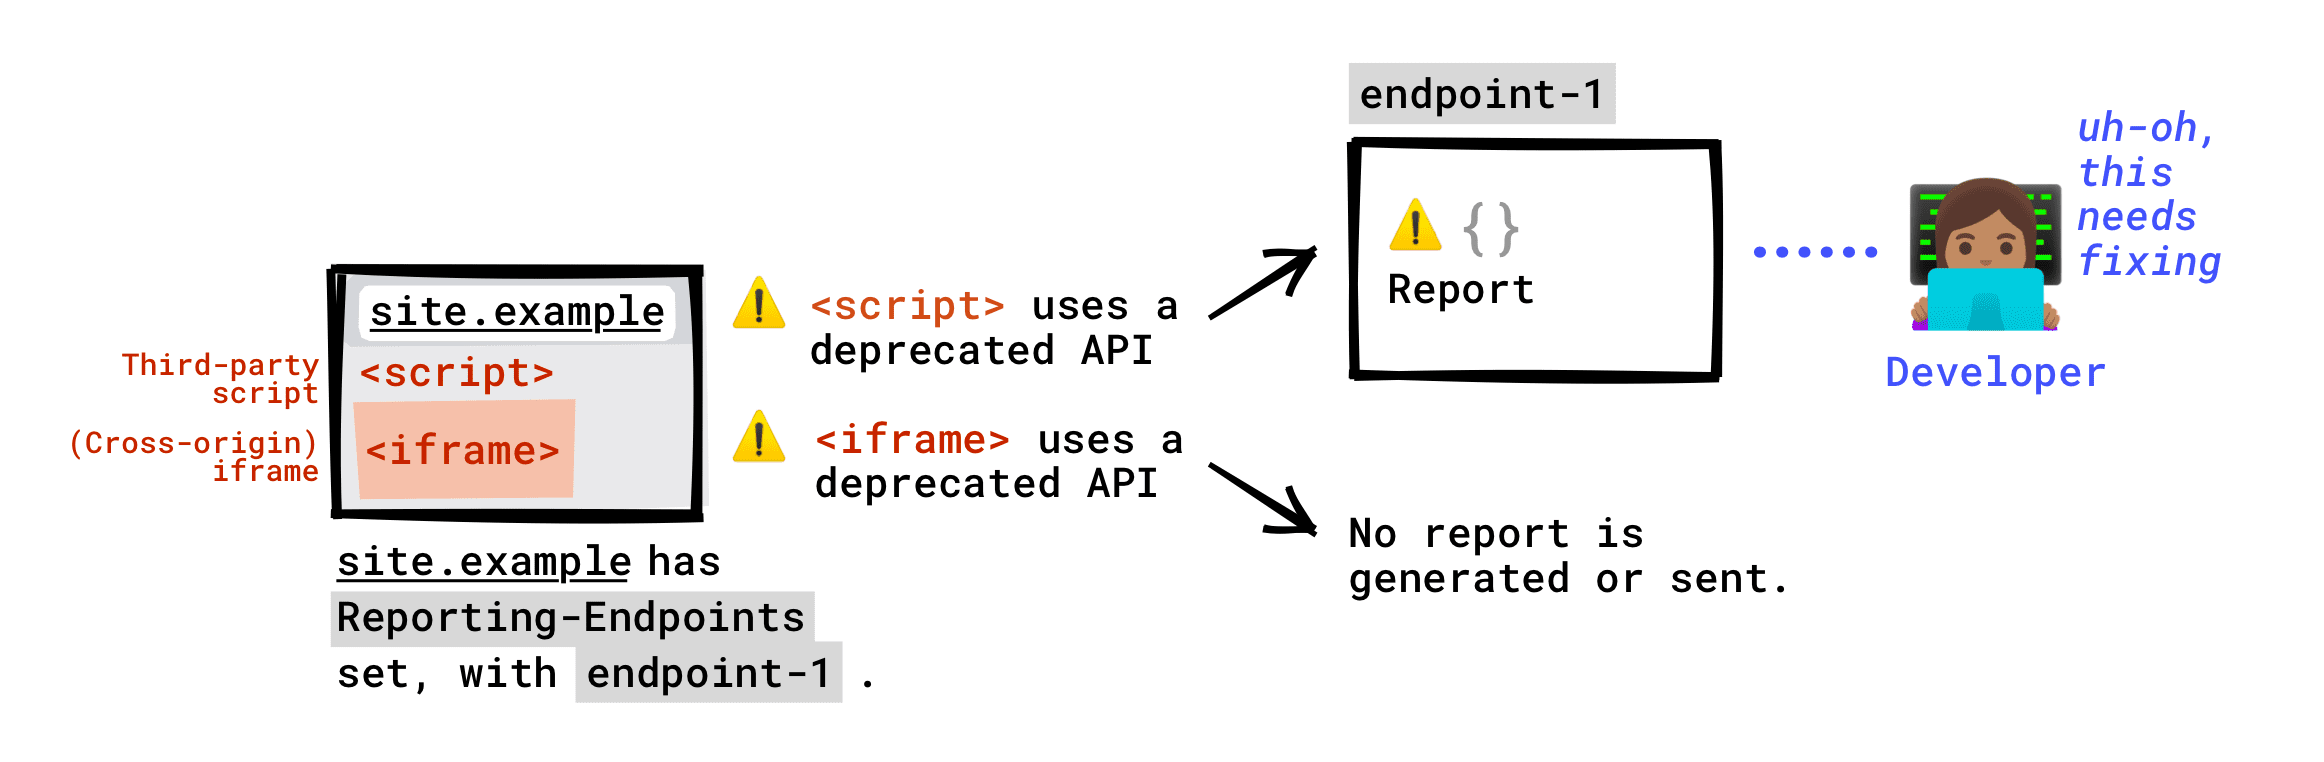 اگر سرصفحه Reporting-Endpoints در صفحه شما تنظیم شده باشد: API منسوخ شده که توسط اسکریپت های شخص ثالث در حال اجرا در صفحه شما خوانده می شود به نقطه پایانی شما گزارش می شود. API منسوخ شده که توسط iframe تعبیه شده در صفحه شما فراخوانی شده است به نقطه پایانی شما گزارش نخواهد شد. تنها در صورتی که سرور iframe Reporting-Endpoints را تنظیم کرده باشد، گزارش منسوخ ایجاد می‌شود و این گزارش به هر نقطه پایانی که سرور iframe تنظیم کرده باشد ارسال می‌شود.